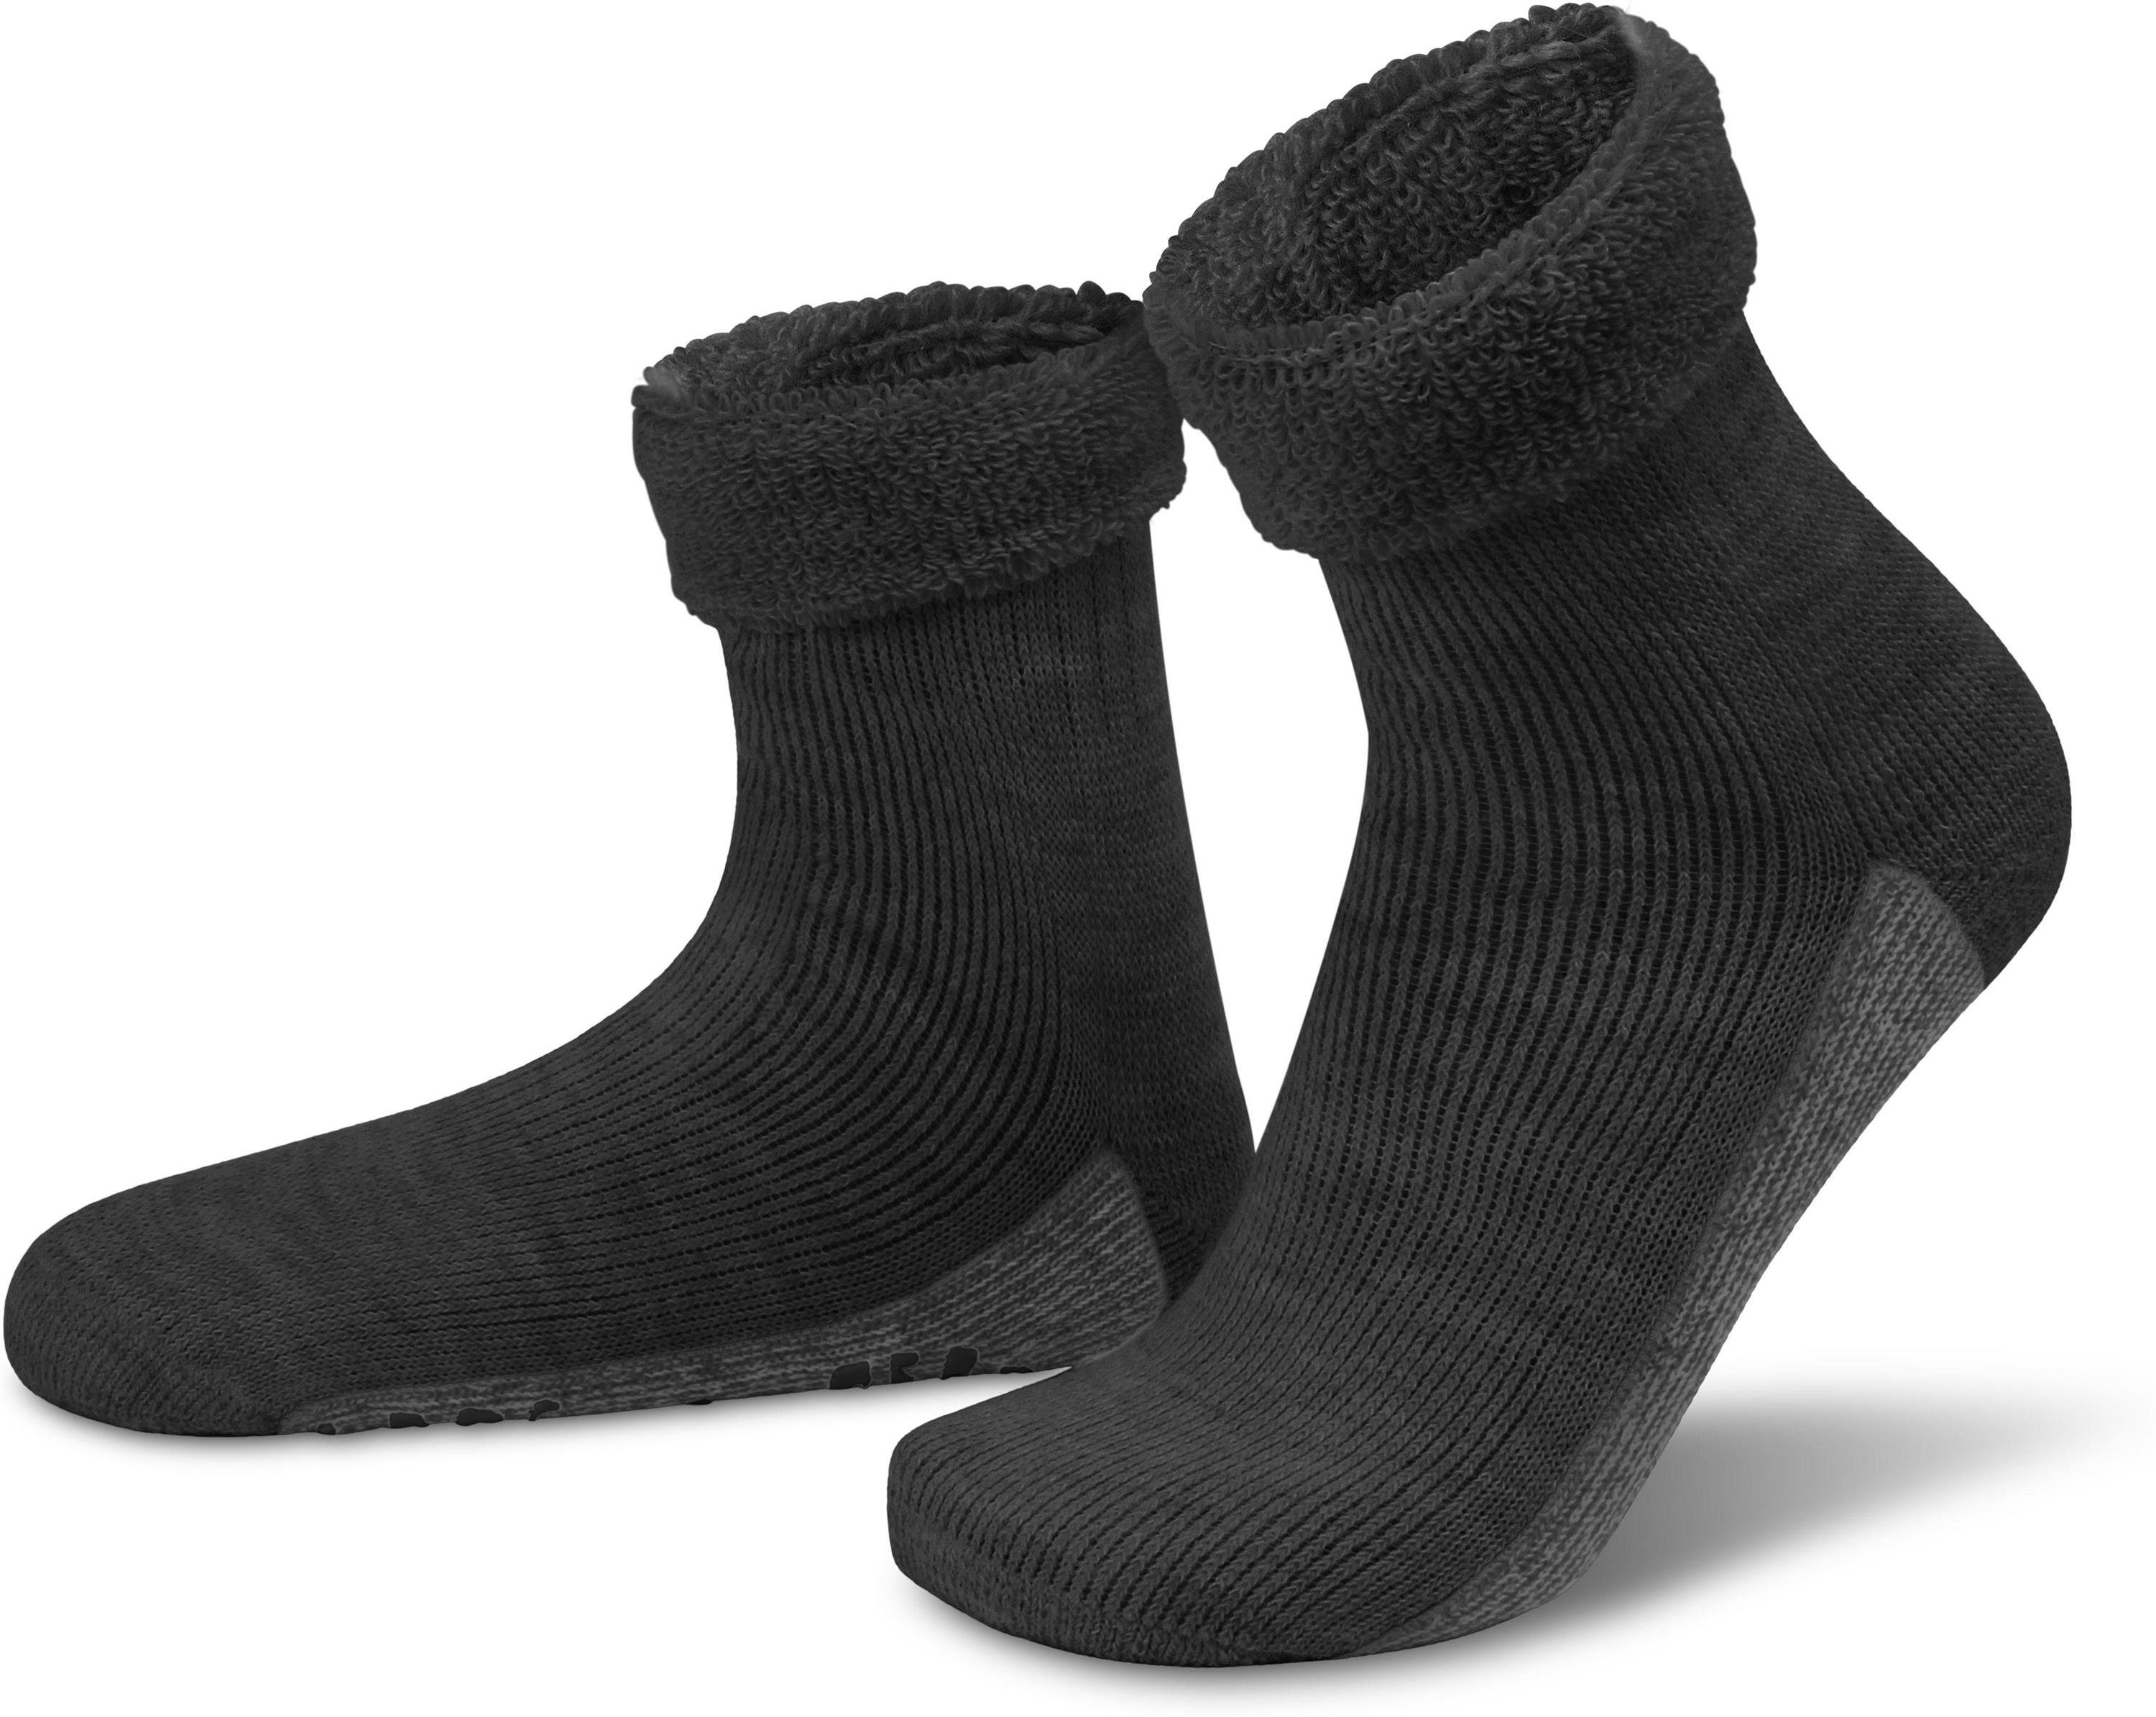 normani ABS-Socken Alpaka-Wollsocken mit ABS-Druck (1 Paar) hochwertige Alpaka-Wolle Anthrazit